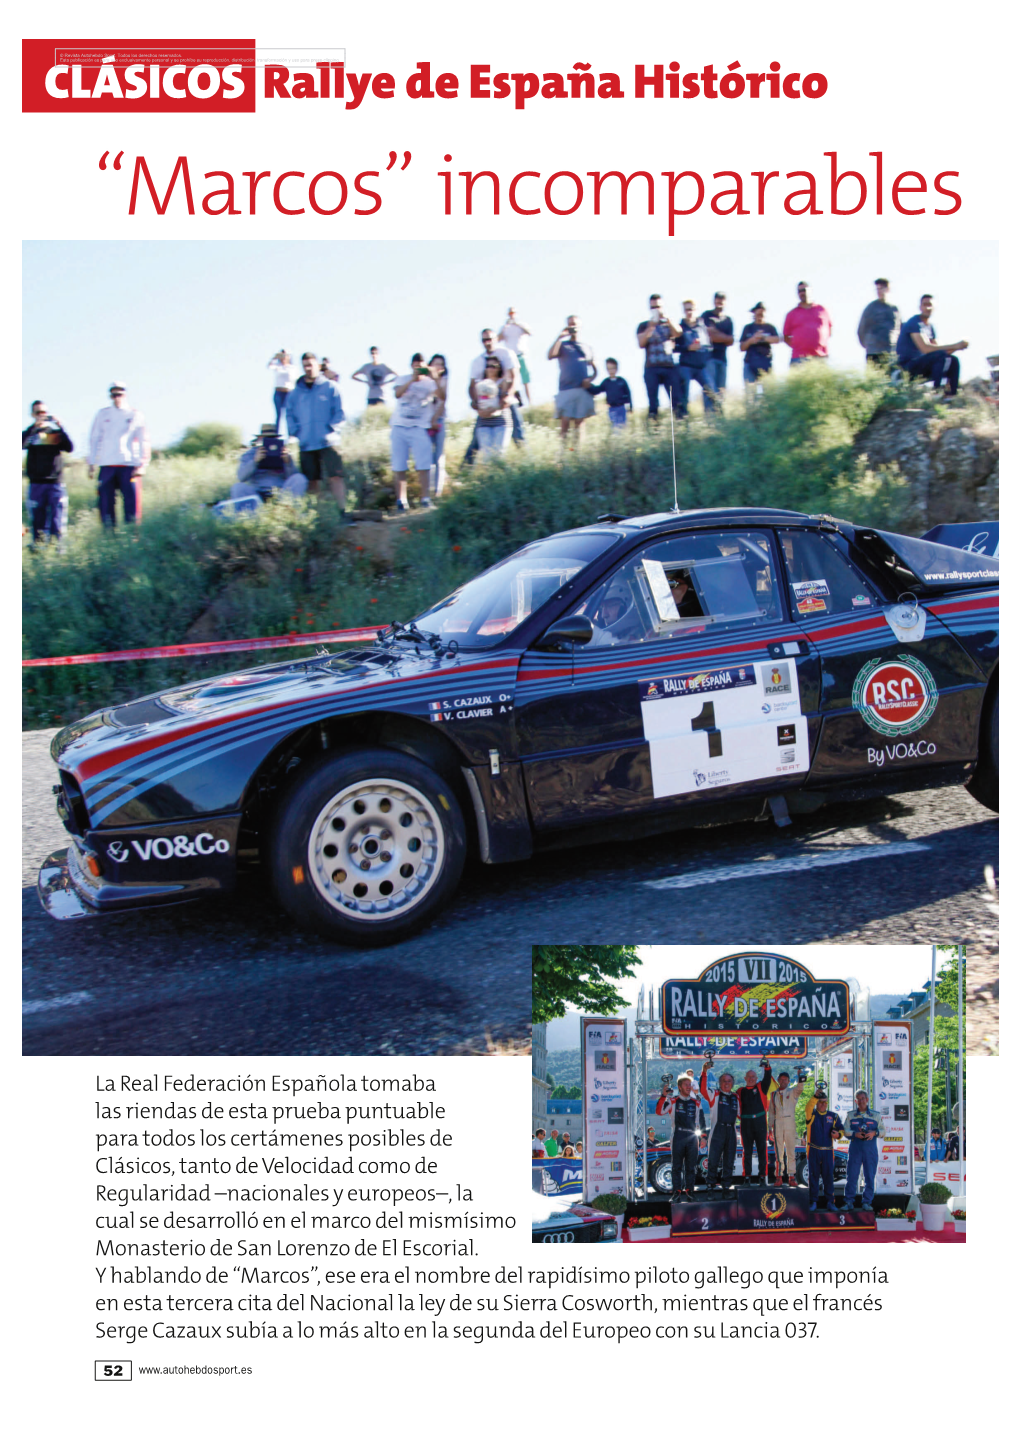 Rallye De España Histórico “Marcos” Incomparables